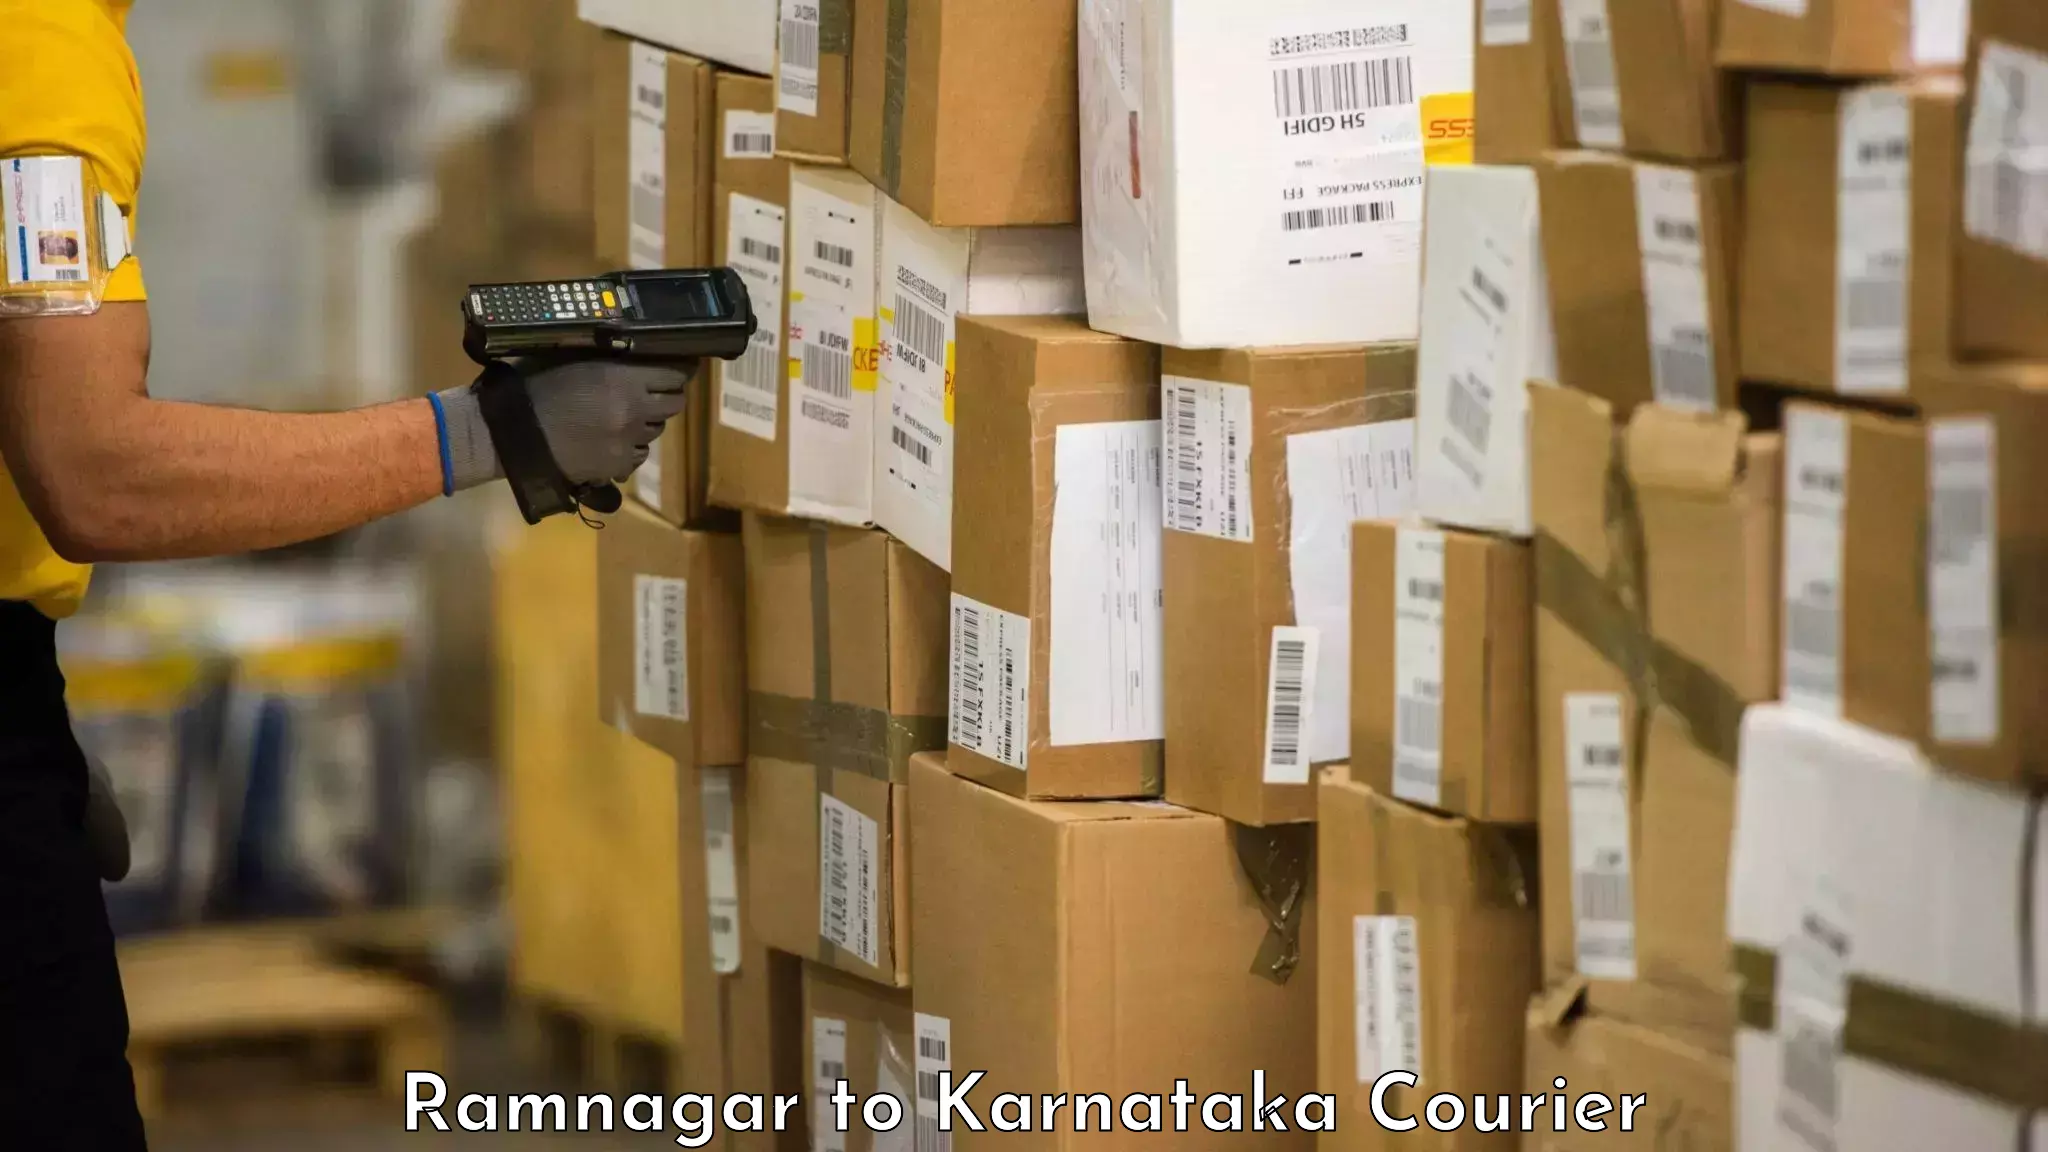 Baggage delivery estimate in Ramnagar to Surathkal